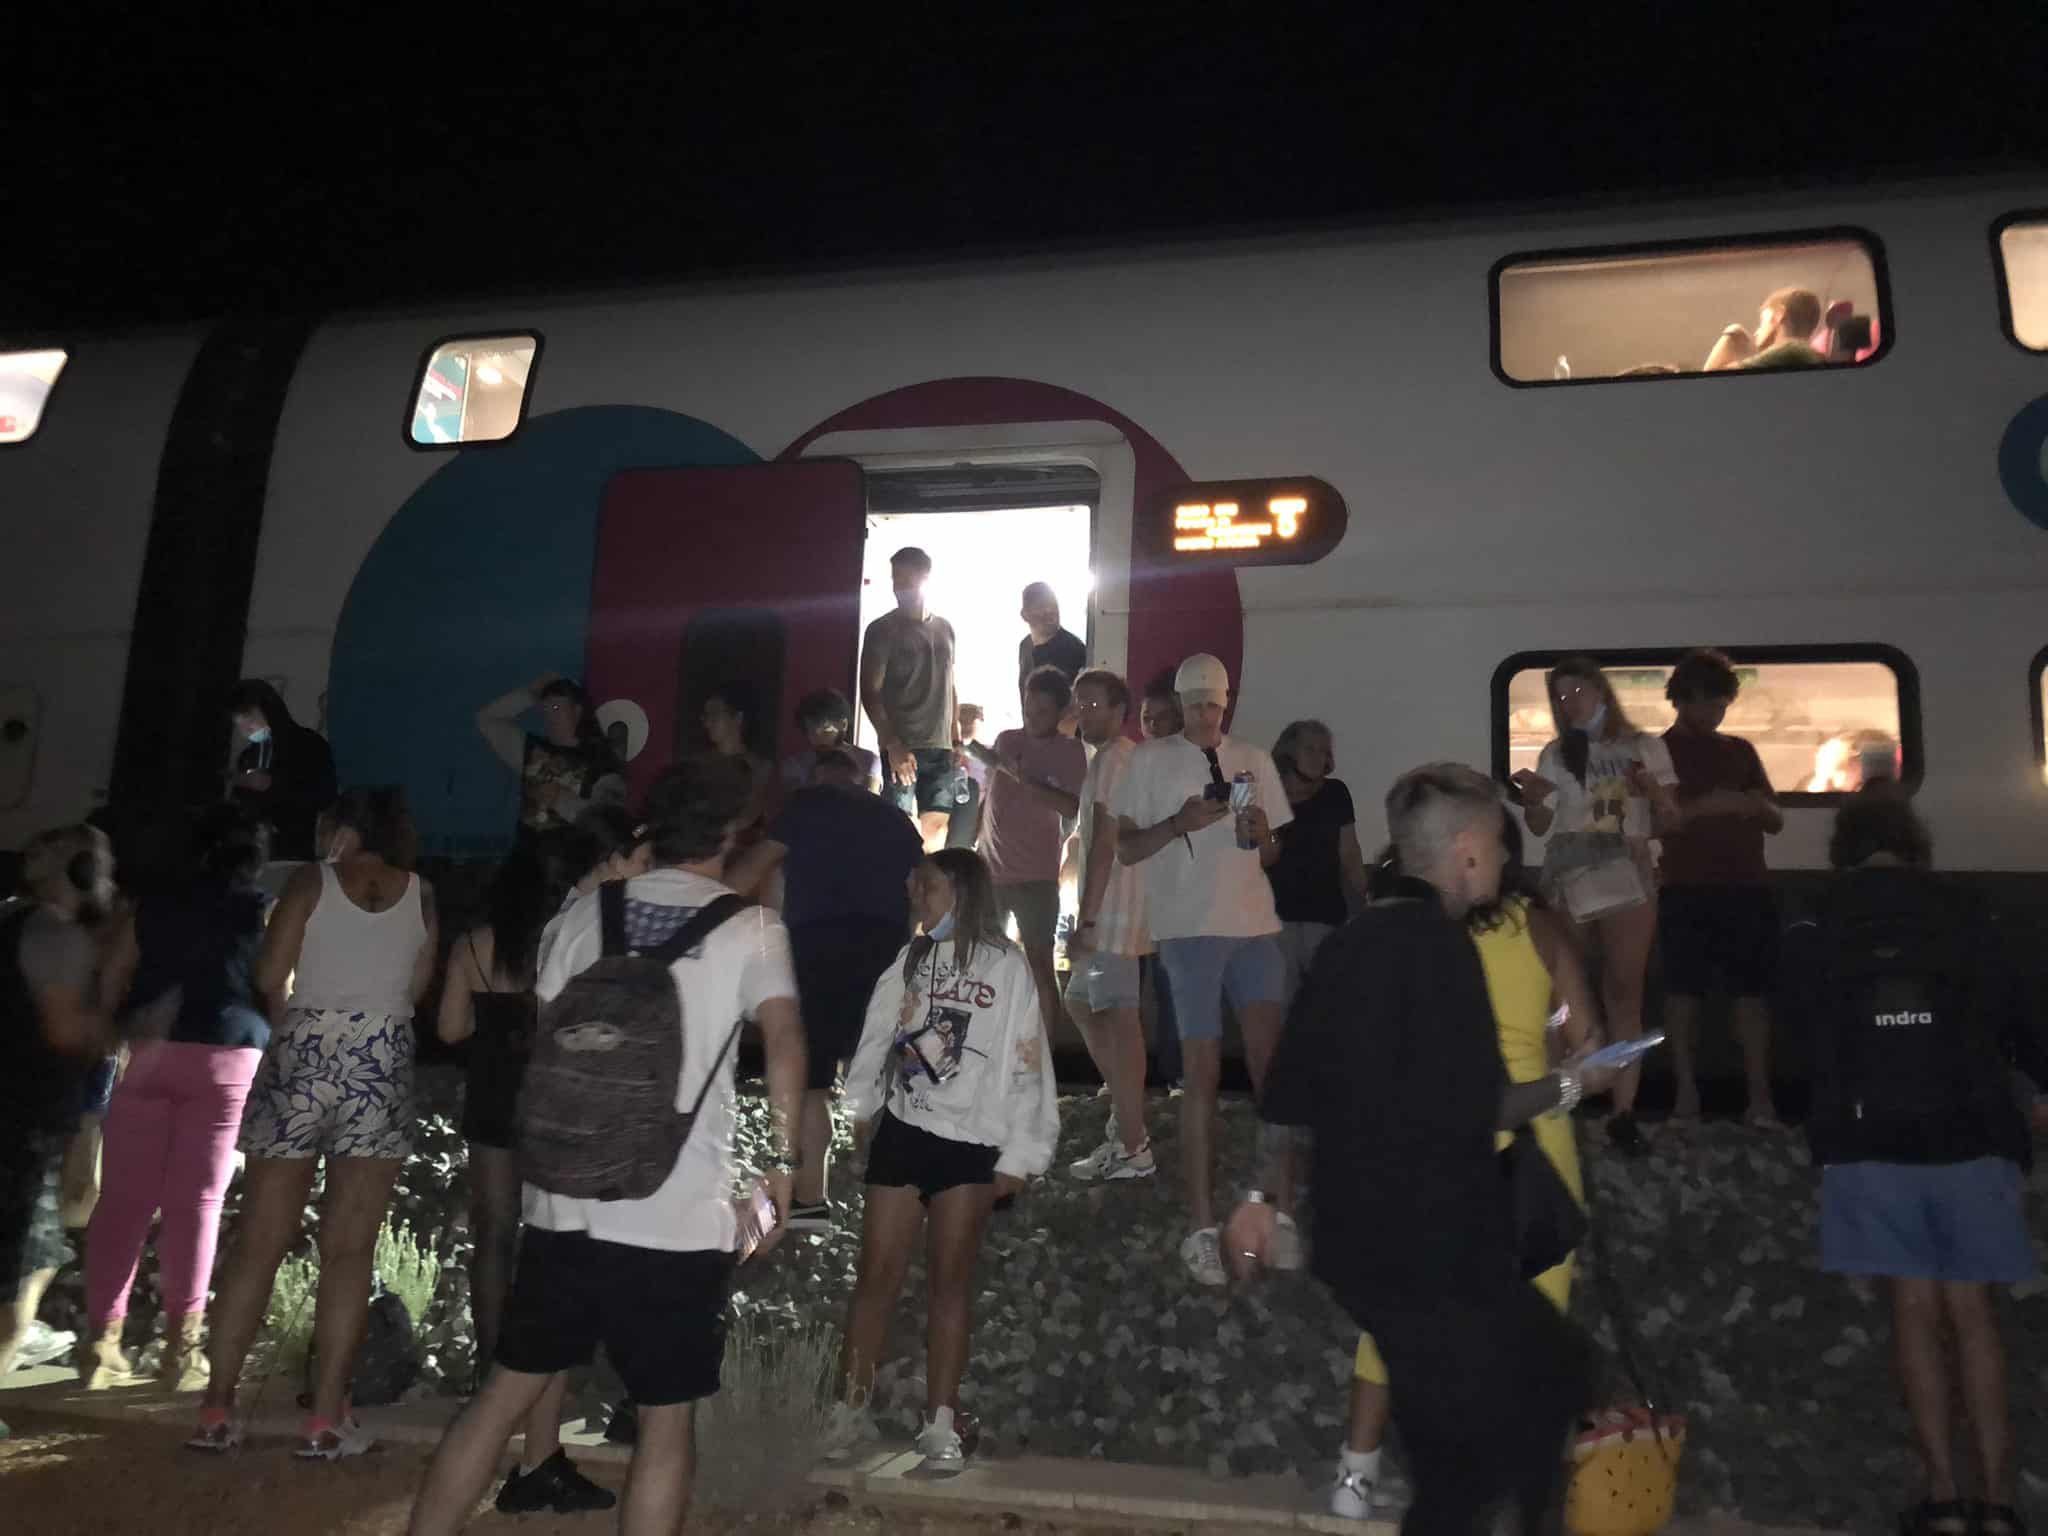 Pasajeros del tren Ouigo parados en el trayecto Barcelona-Madrid de madrugada